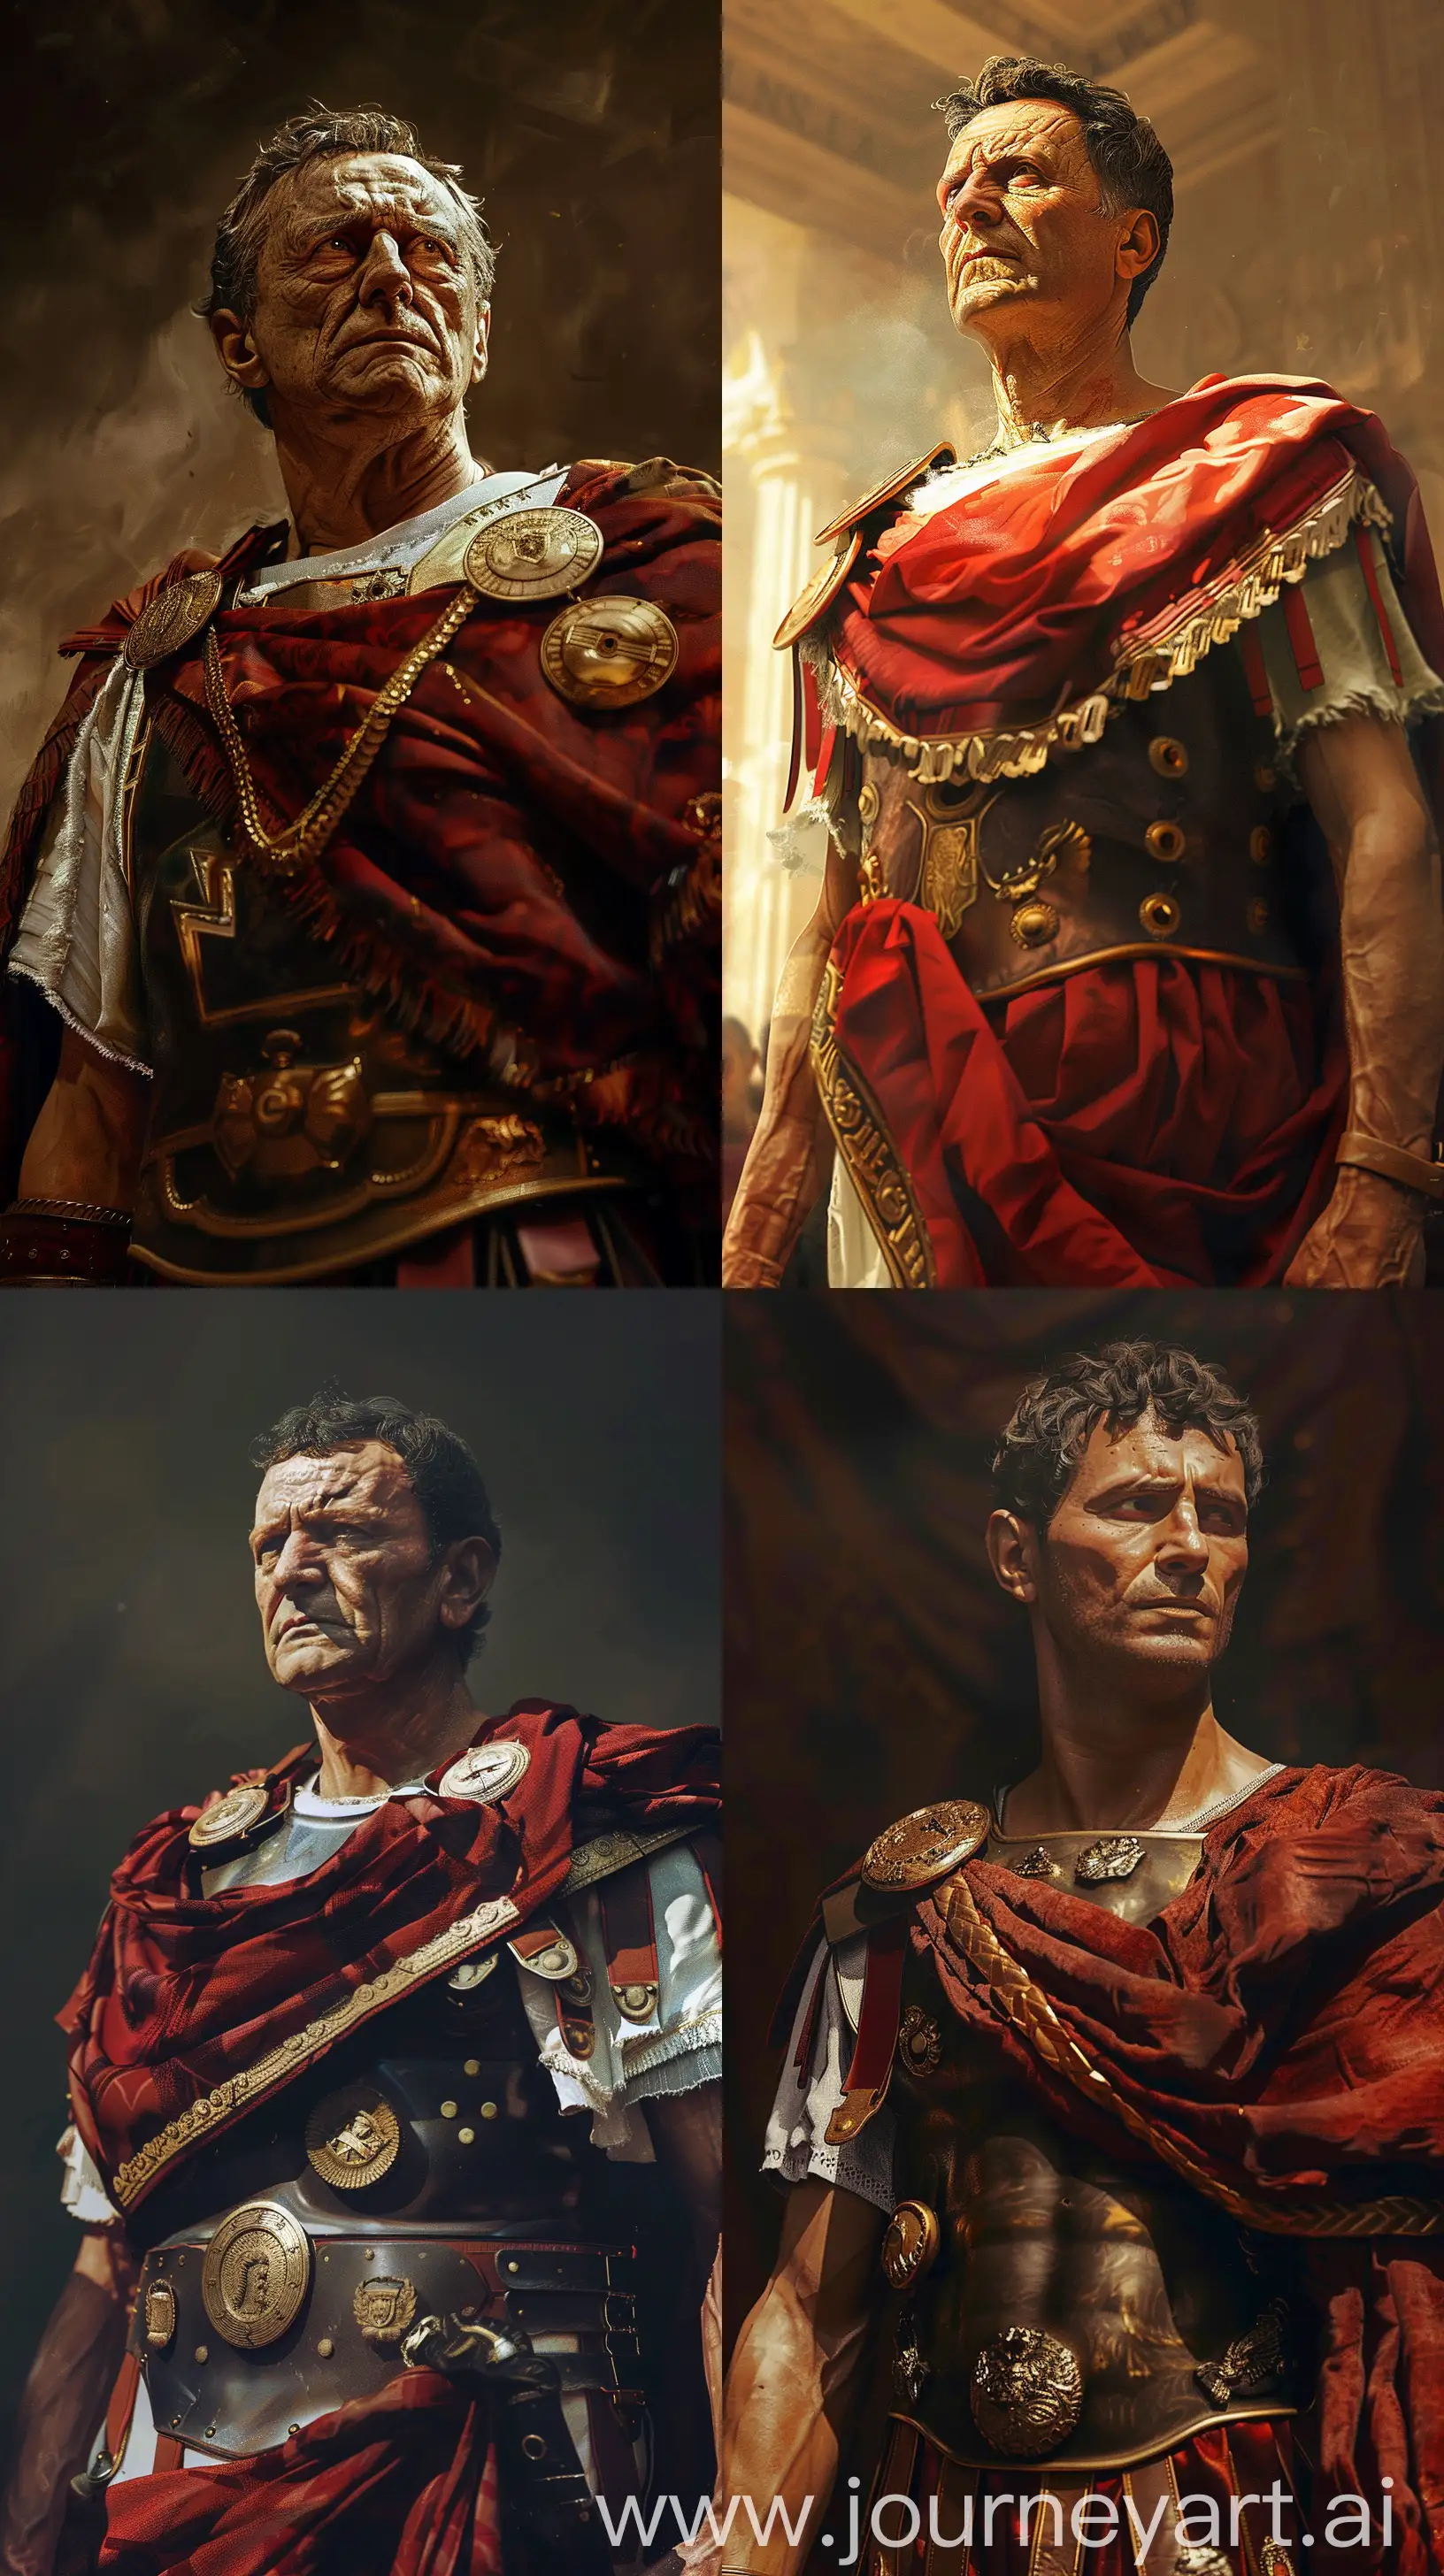 Gaius-Julius-Caesar-in-Augustus-Attire-Historical-Accuracy-Digital-Painting